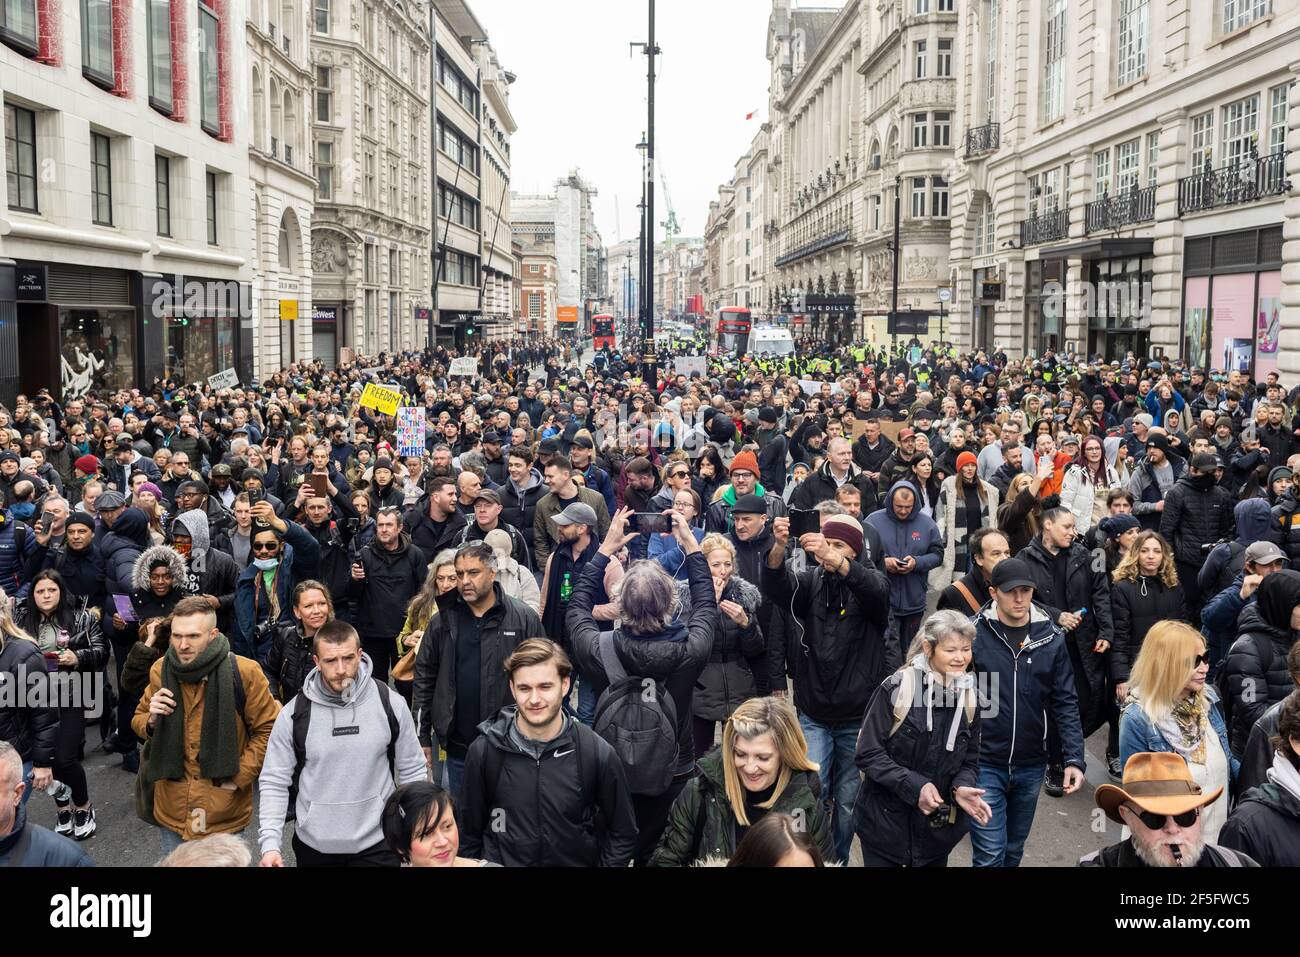 Manifestation contre le confinement et la vaccination contre Covid-19, Londres, 20 mars 2021. Foule de manifestants en marche. Banque D'Images